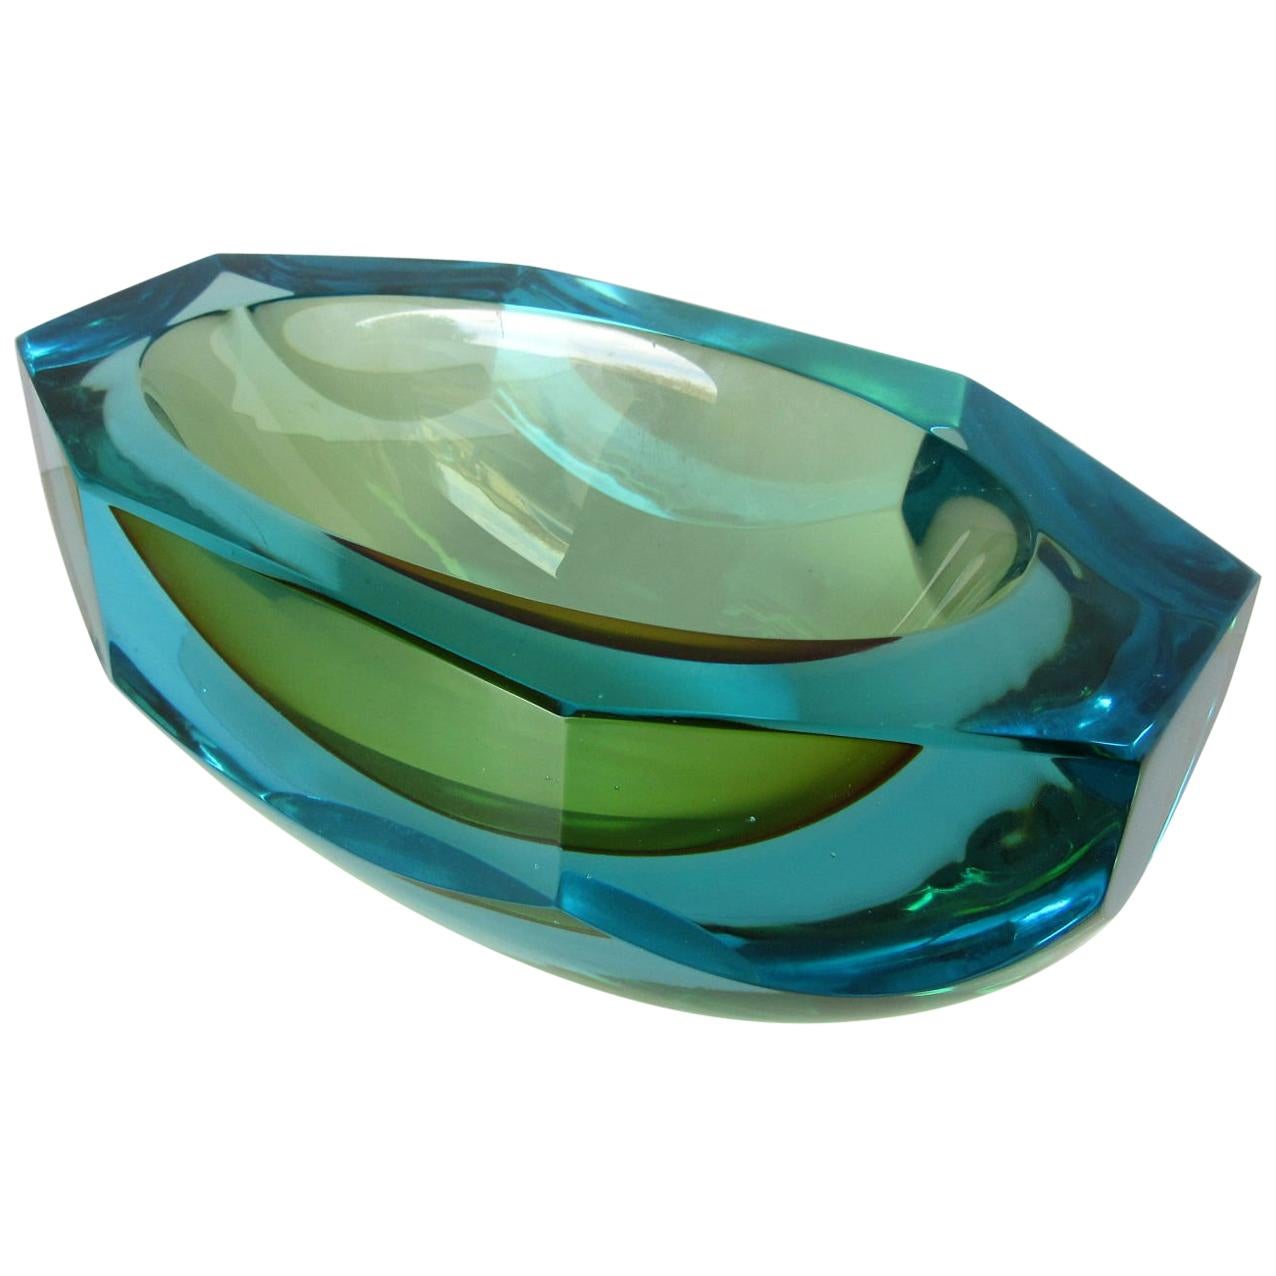 Poli Seguso Vetri d'Arte Murano Sommerso Blue Green Italian Art Glass Bowl